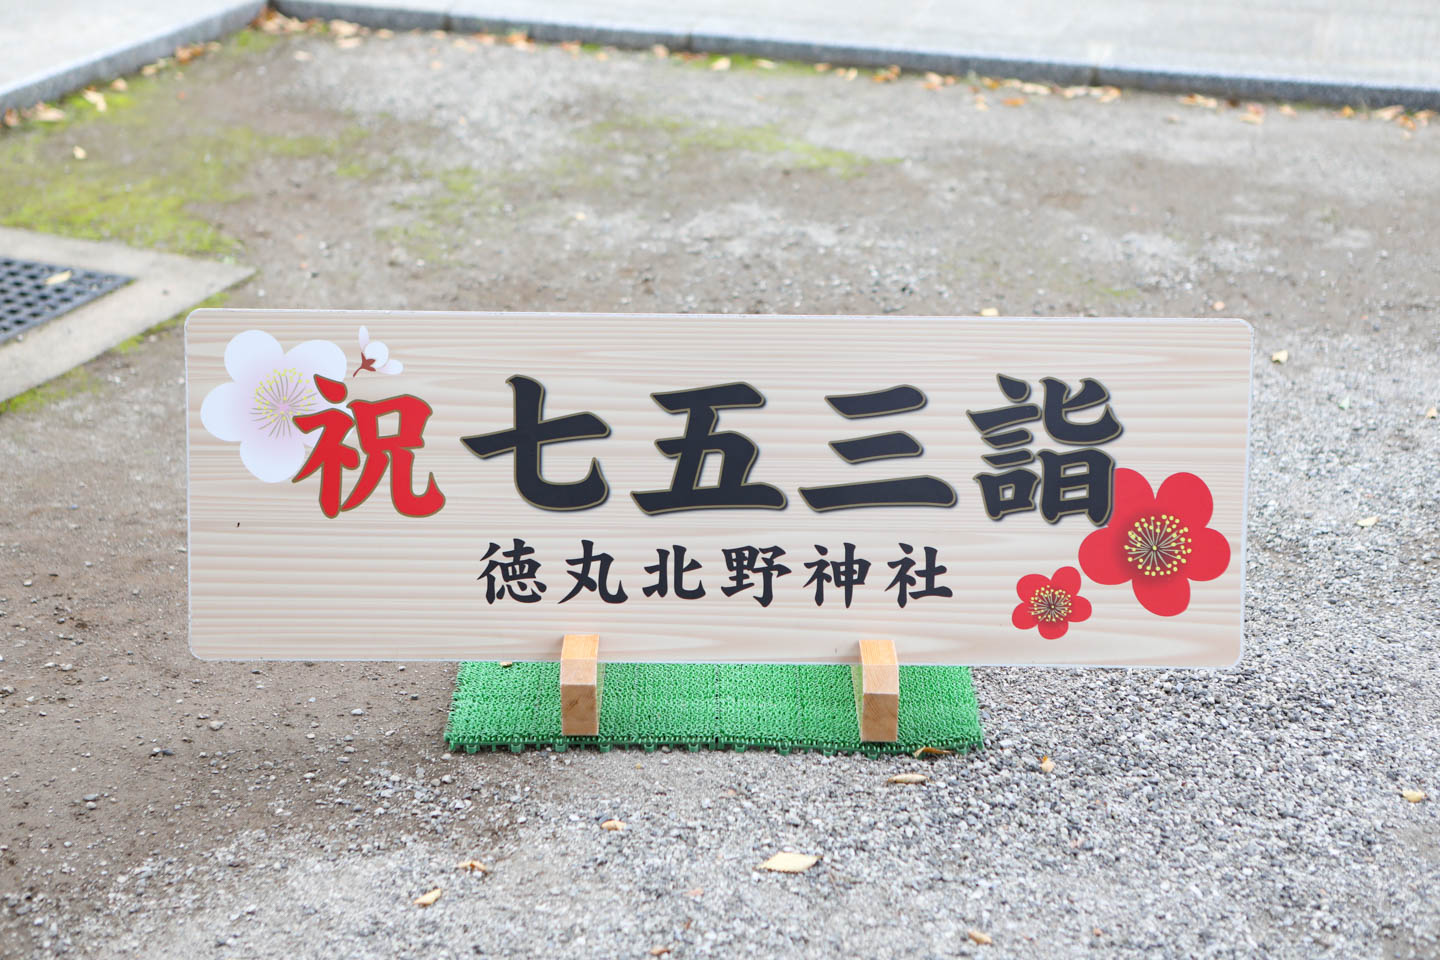 徳丸北野神社 七五三のプレート(看板)